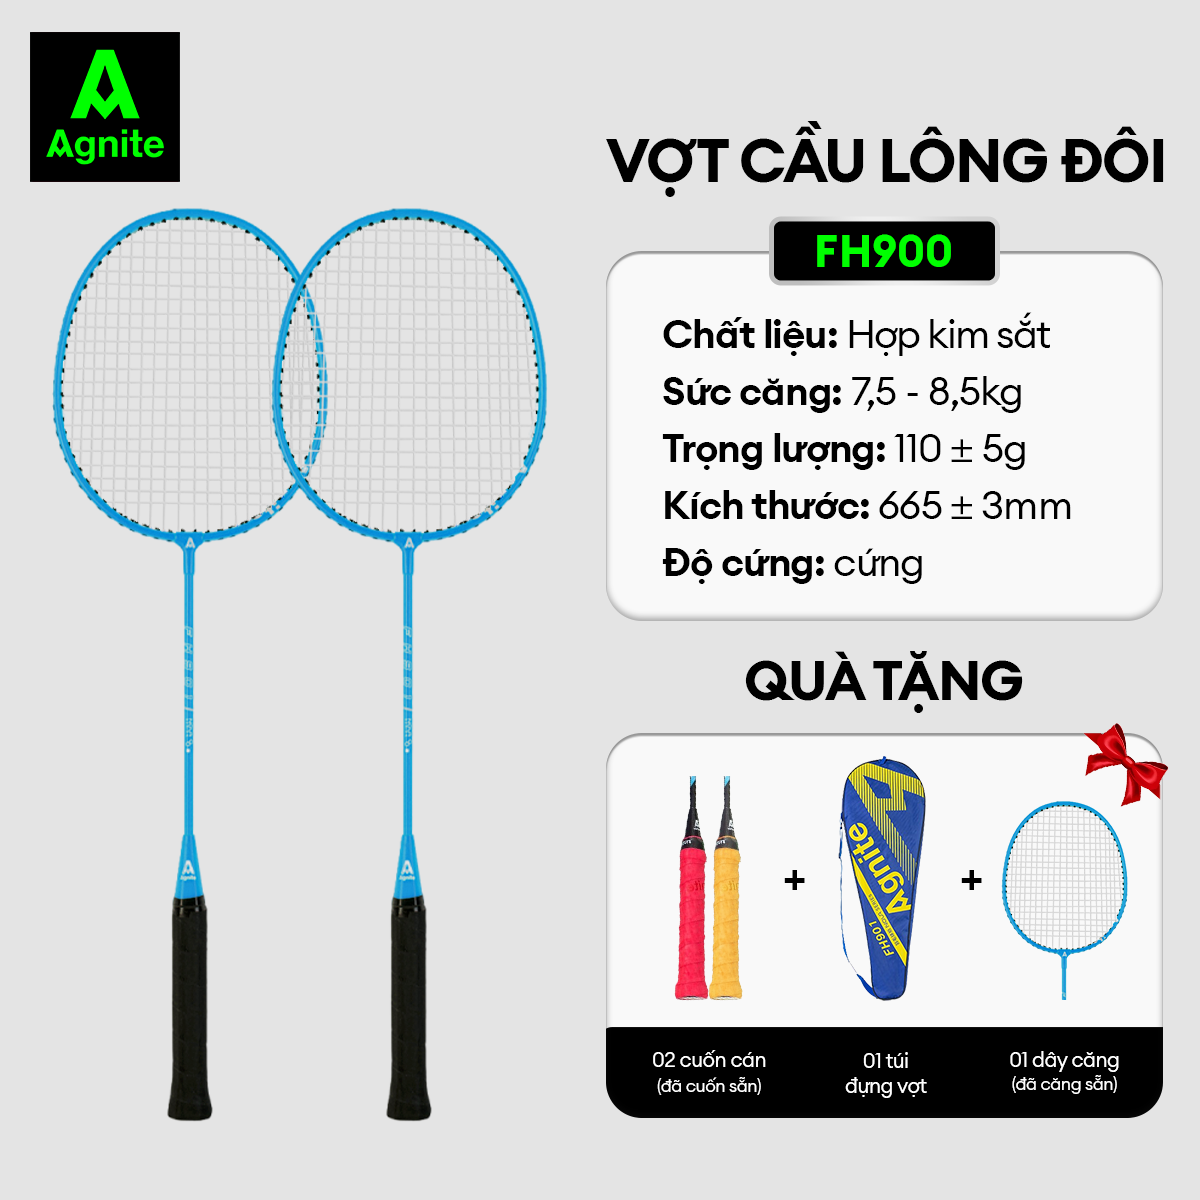 Hình ảnh [TẶNG QUÀ] Bộ 2 vợt cầu lông thế hệ mới Agnite, siêu bền, nhẹ TẶNG kèm hộp cầu và túi đựng FH900/FH901